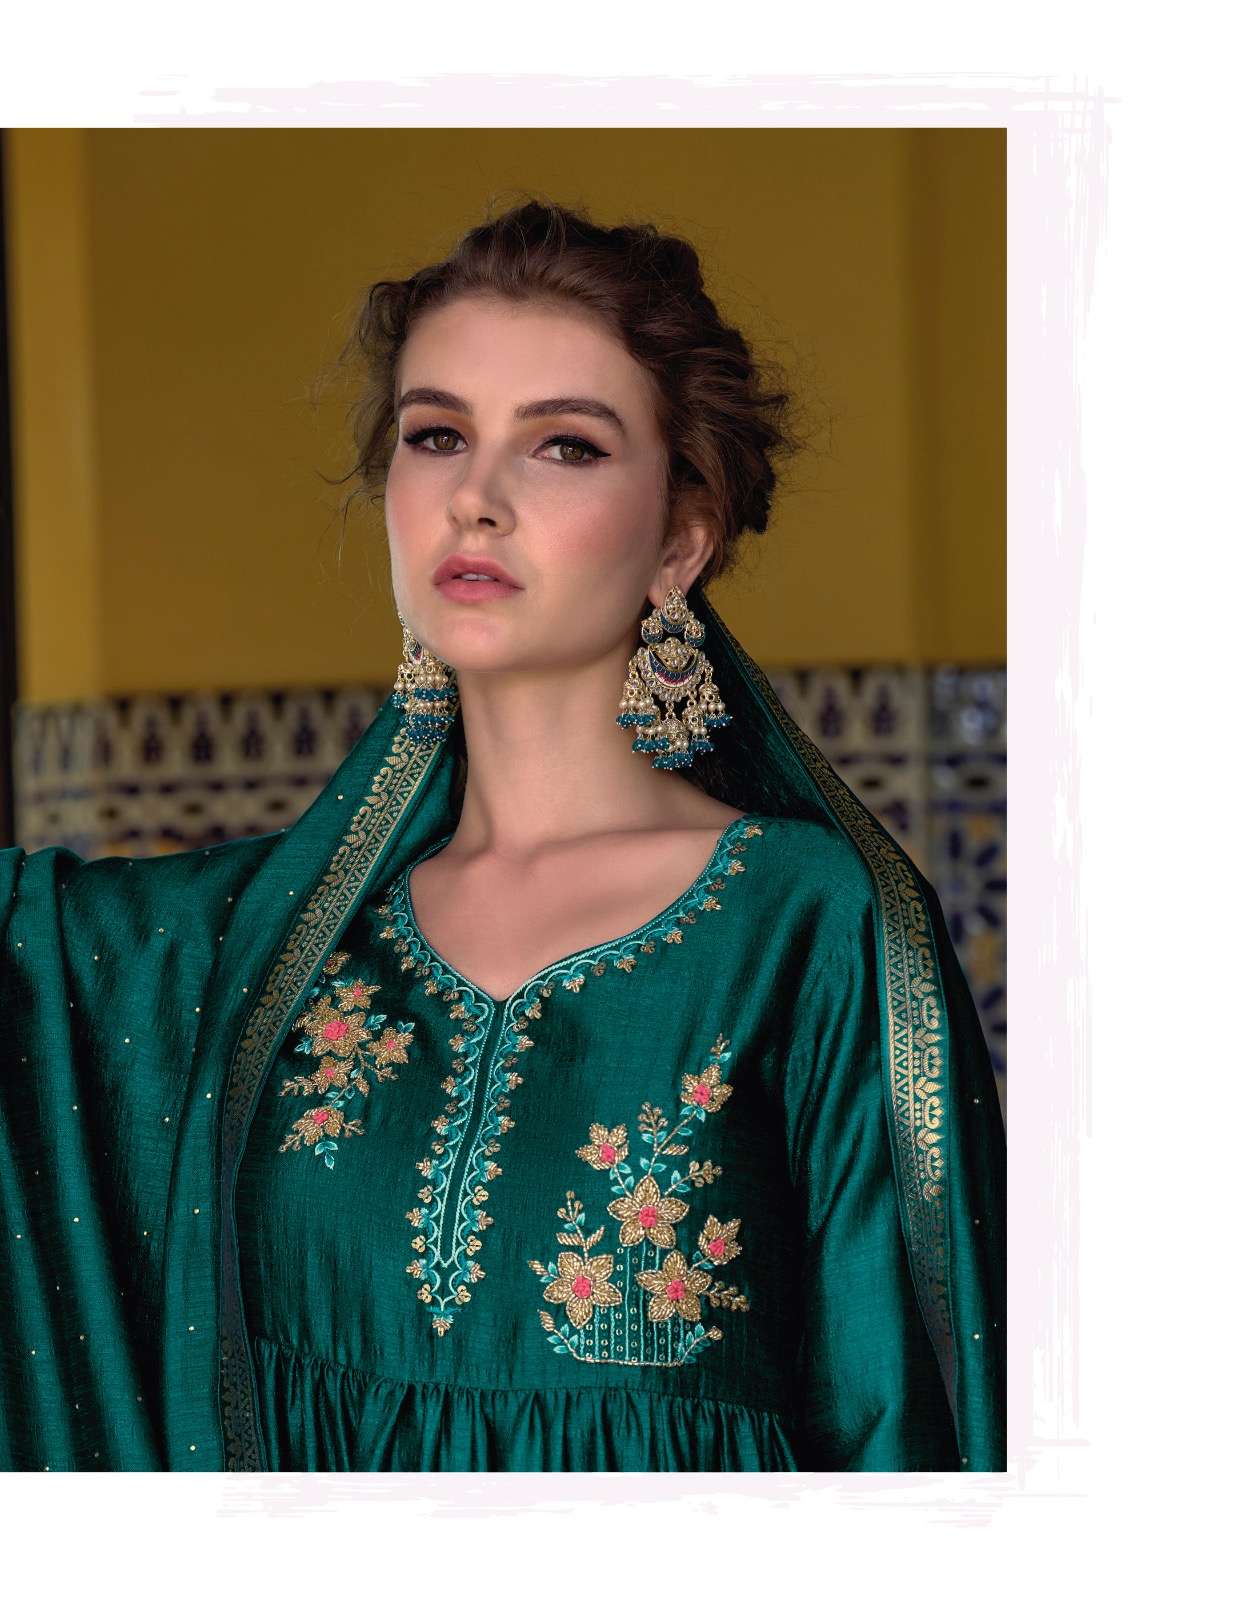 lily and lali masakali 11001-11006 series exclusive designer kurtis catalogue manufacturer surat 